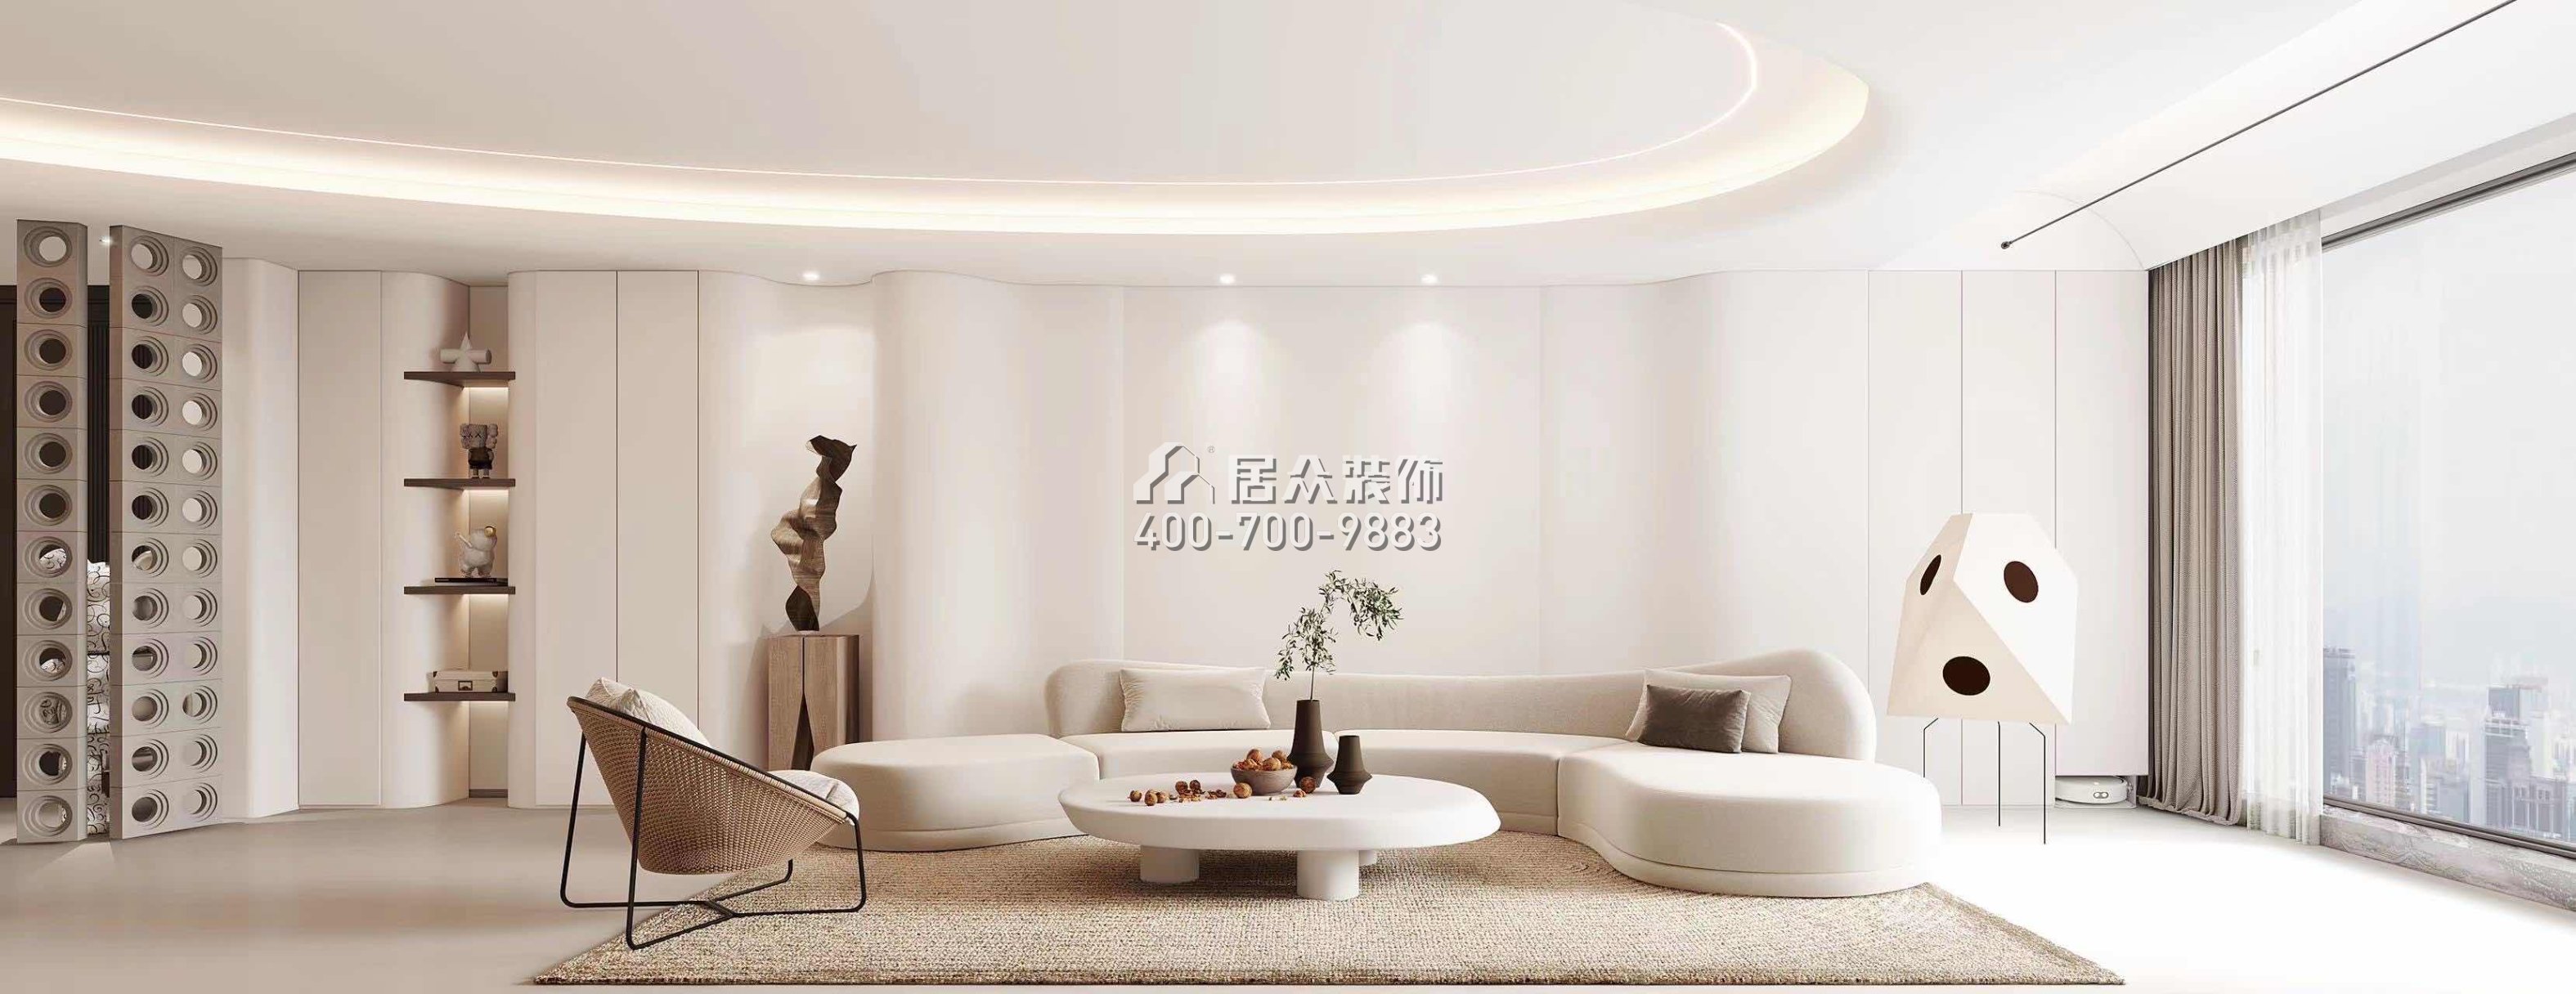 中洲滨海华府一期166平方米现代简约风格平层户型客厅（中国）科技有限公司官网效果图